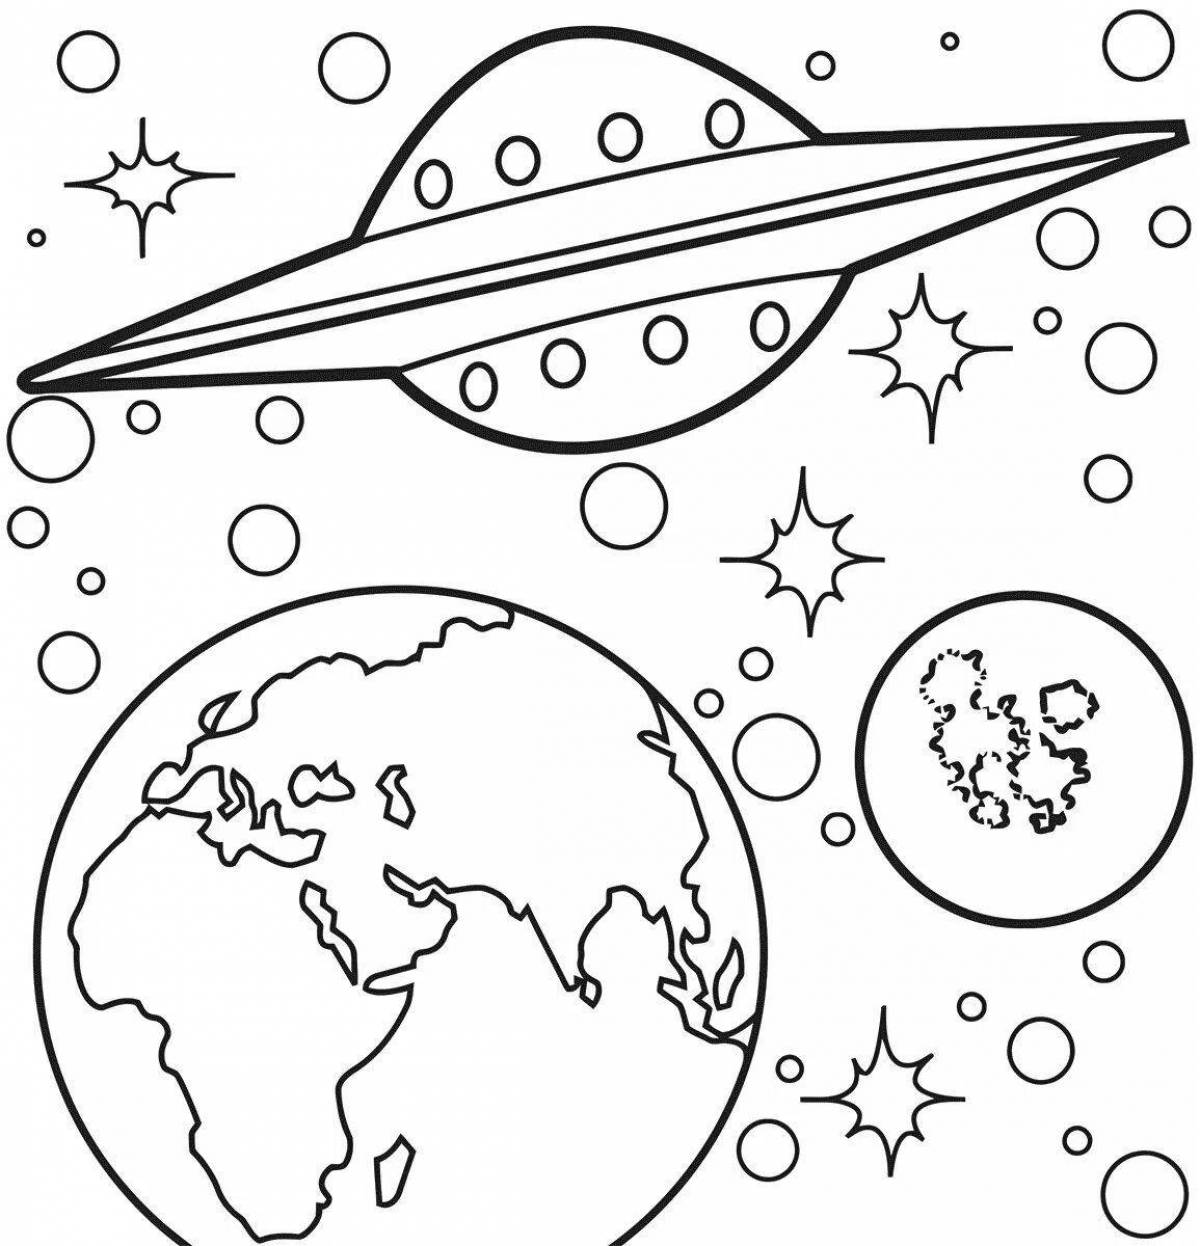 Раскраски к дню космонавтики для детей распечатать. Космос раскраска для детей. Раскраска. В космосе. Раскраска космос и планеты для детей. Планеты раскраска для детей.